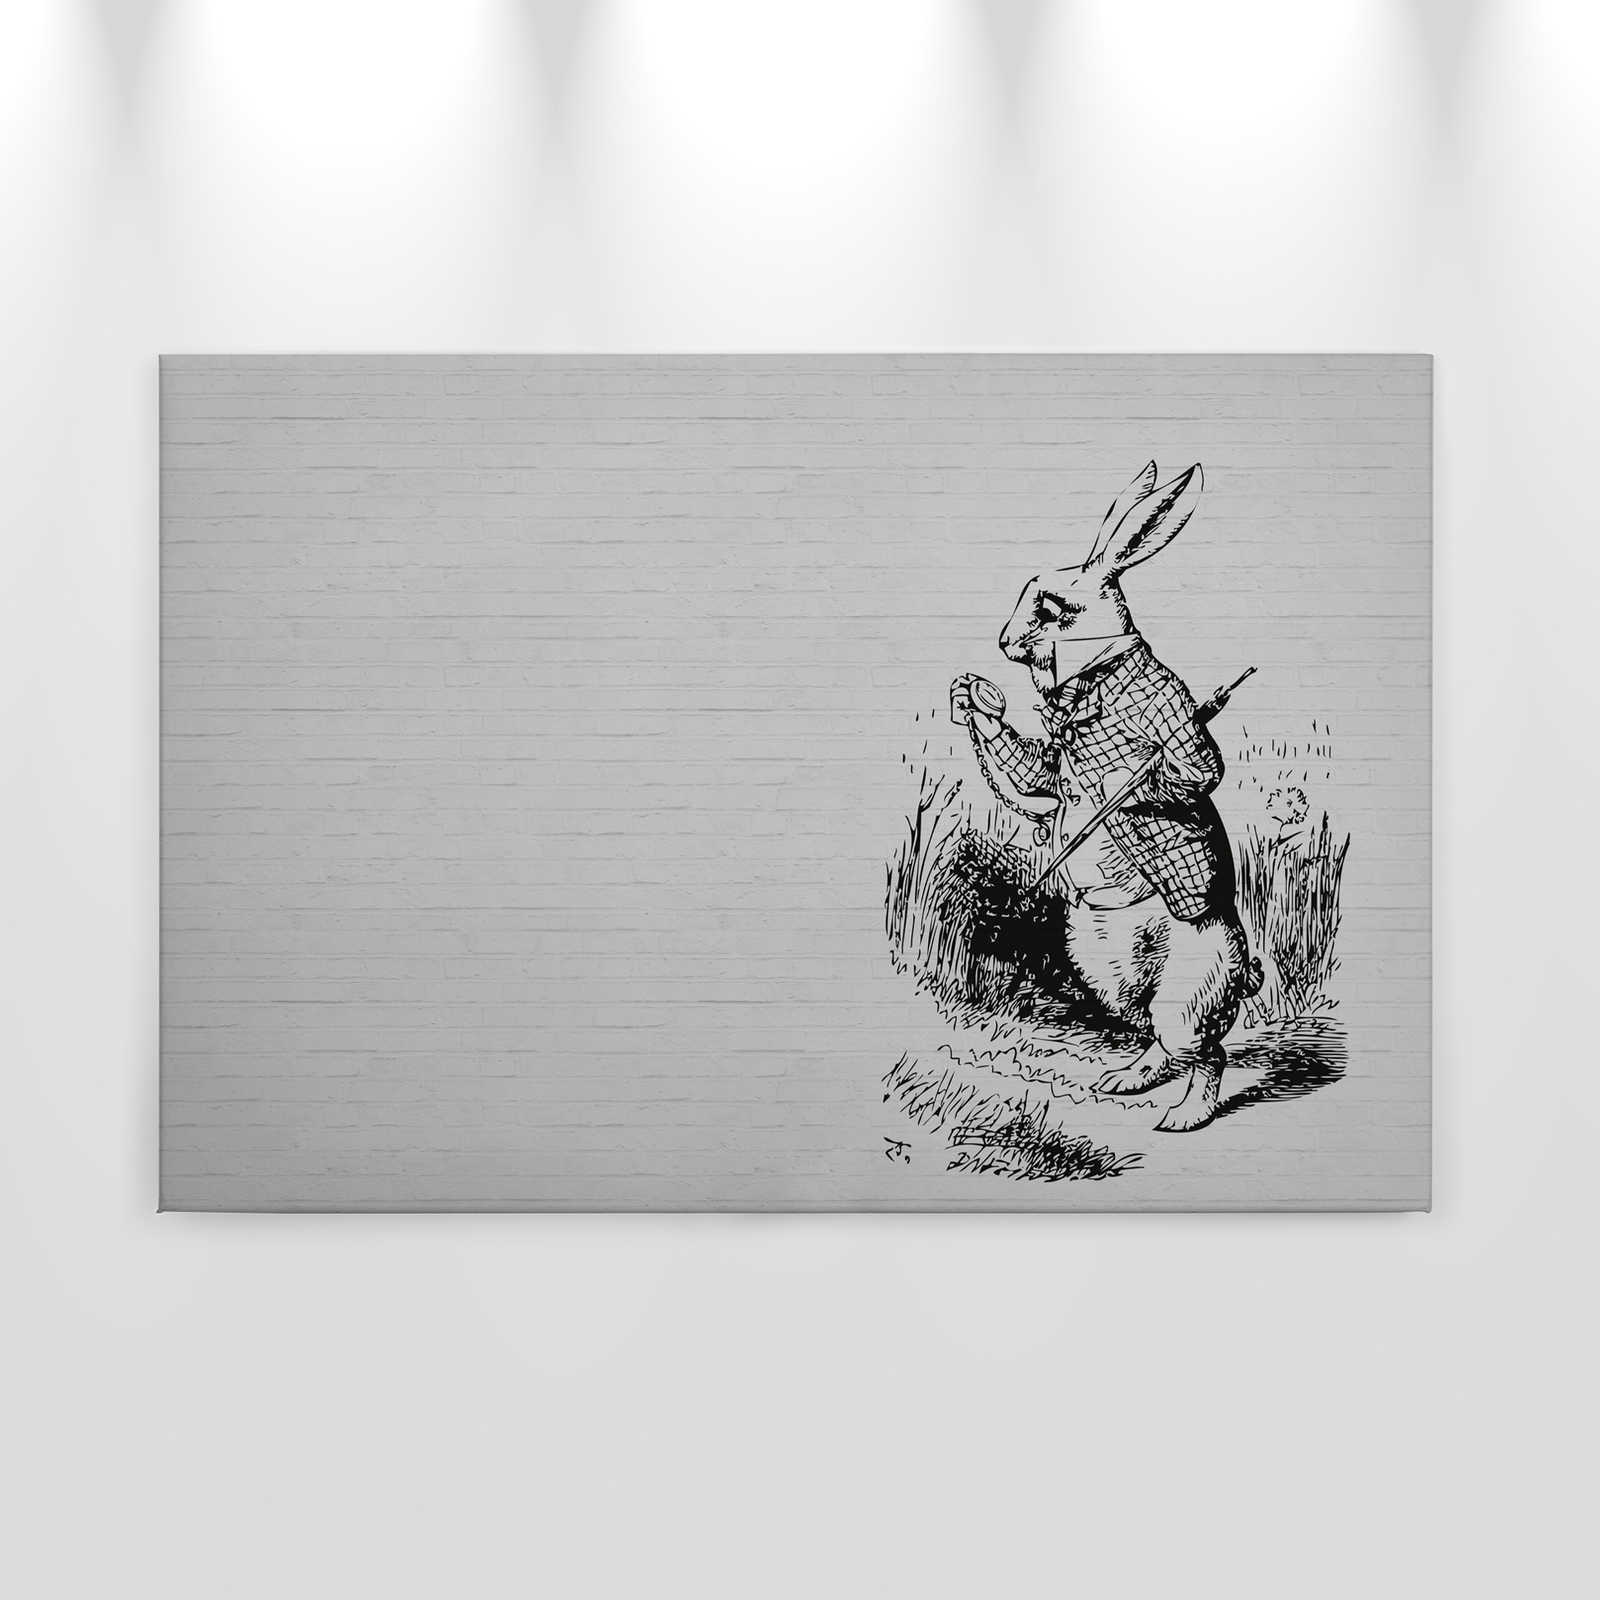             Zwart-wit canvas schilderij Stenen blik & konijn met wandelstok - 0.90 m x 0.60 m
        